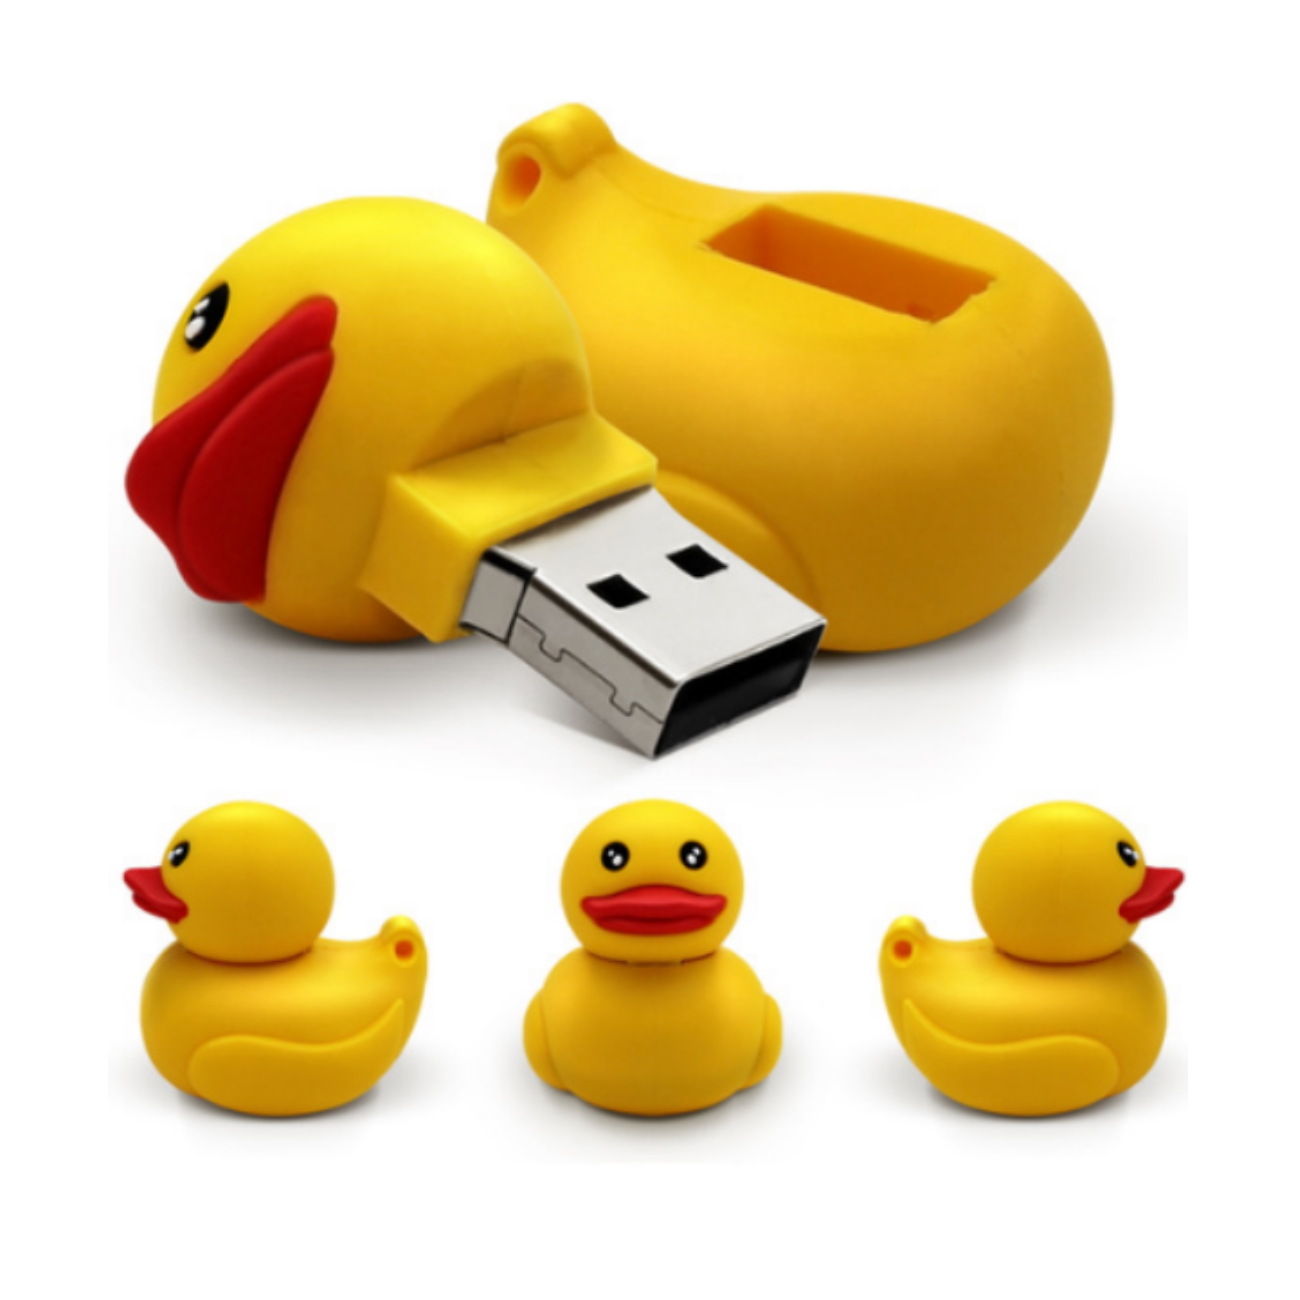 GERMANY USB (Gelb, Ente GB) USB-Stick 64